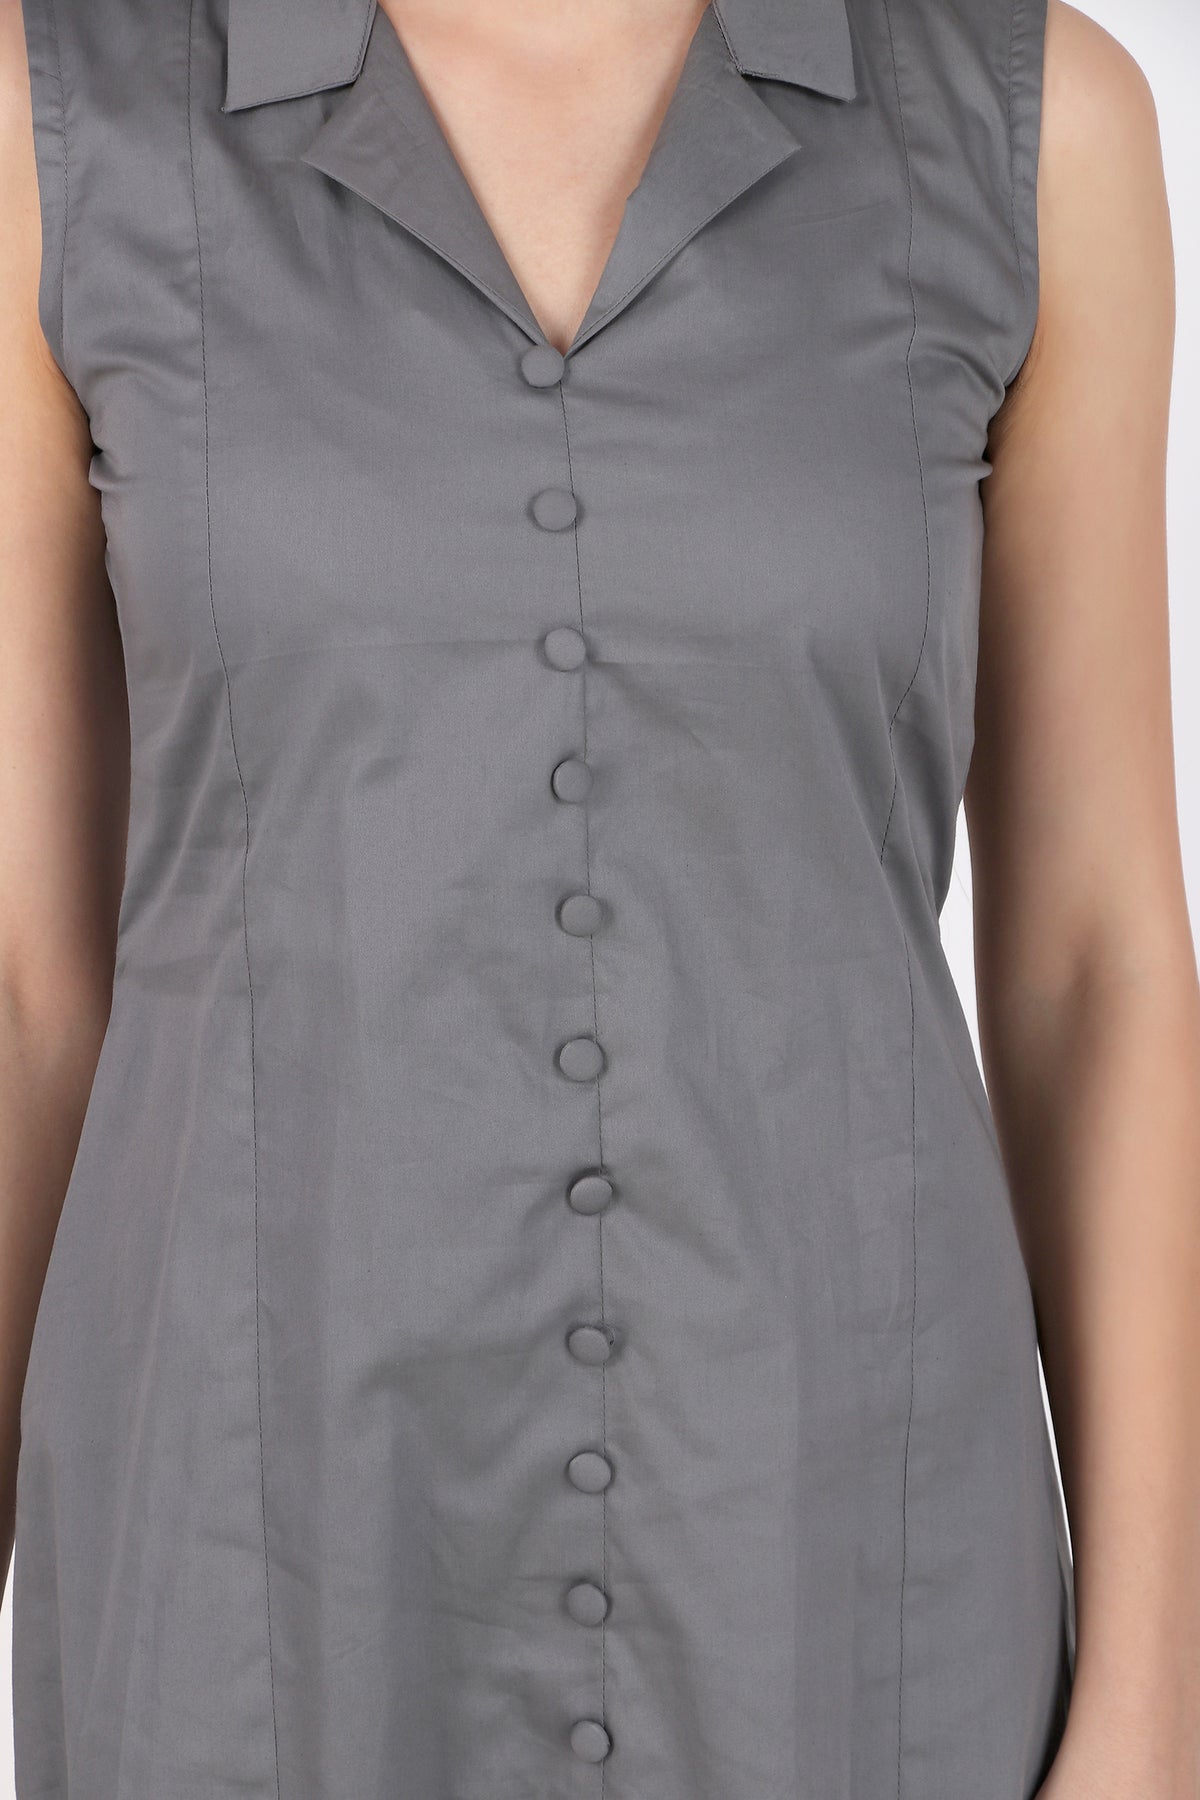 Lapel Grace Calf-Length Dress, Dark Gray